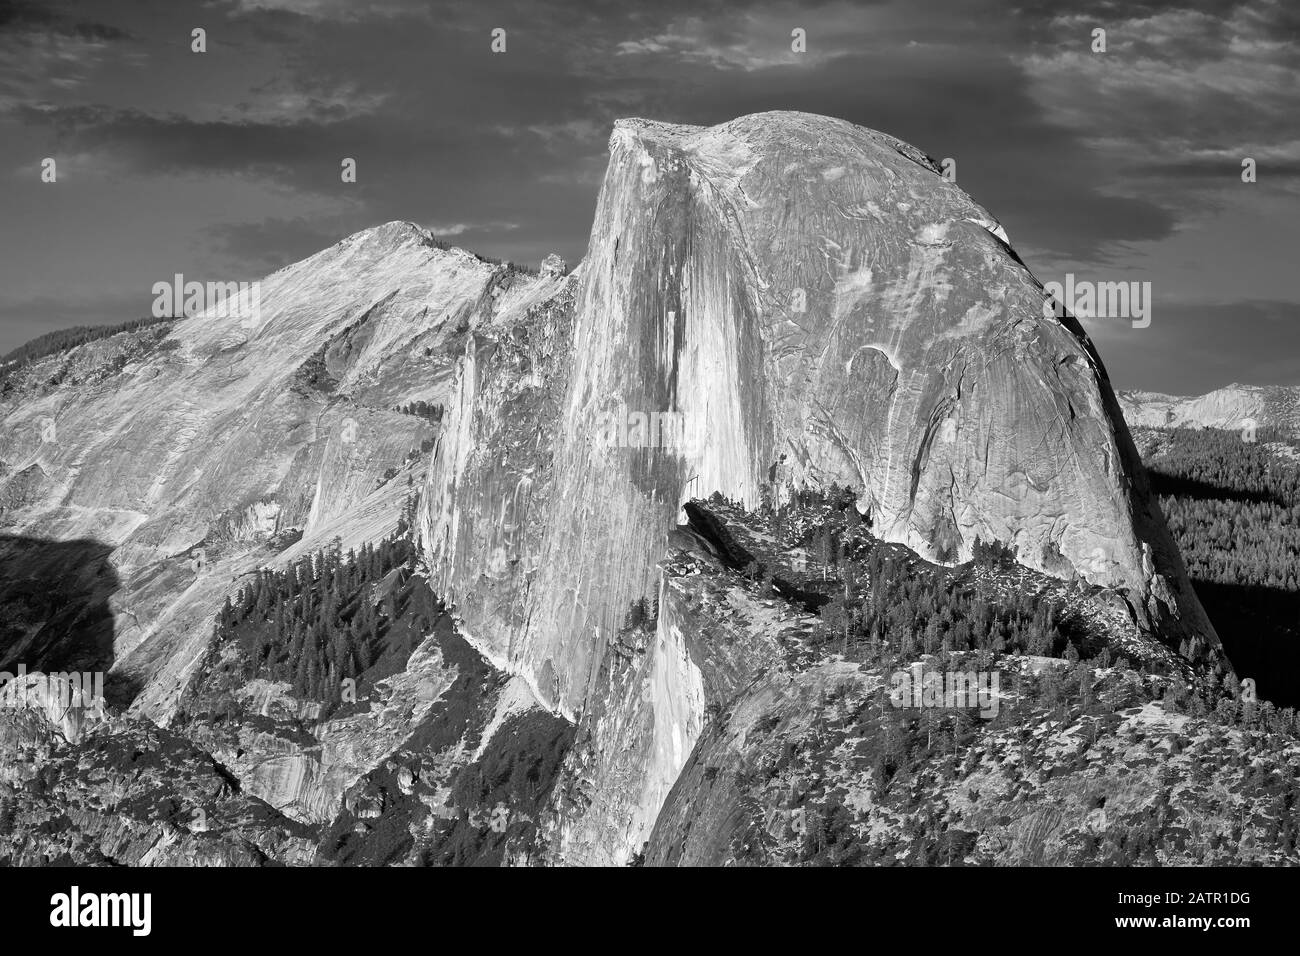 Imagen en blanco y negro De Half Dome, famosa cúpula de granito de Yosemite Valley, California, Estados Unidos. Foto de stock